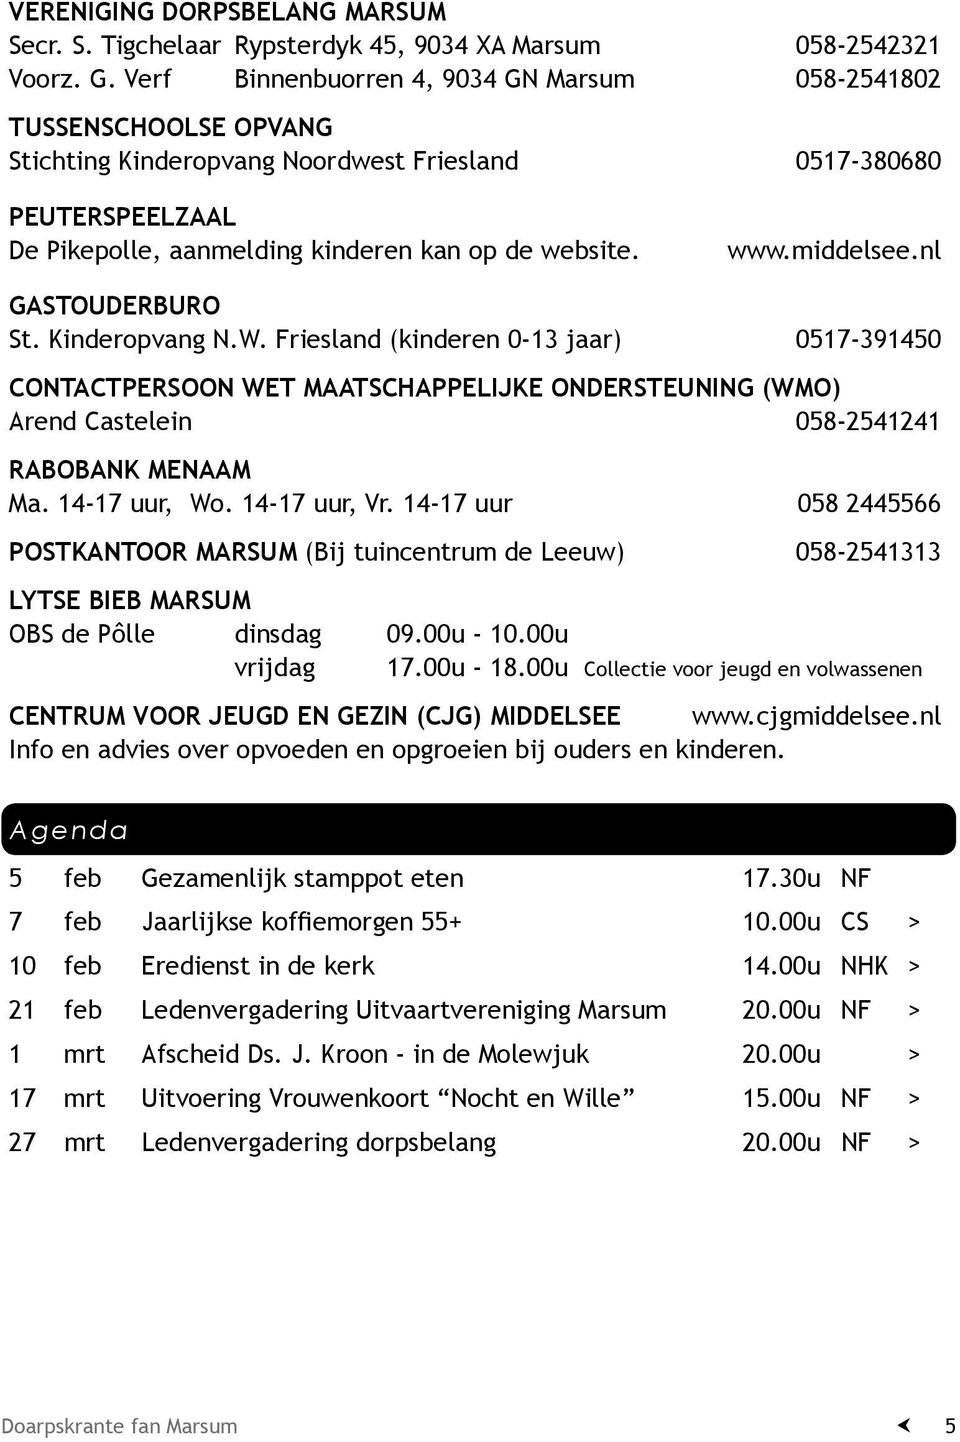 middelsee.nl Gastouderburo St. Kinderopvang N.W. Friesland (kinderen 0-13 jaar) 0517-391450 Contactpersoon Wet Maatschappelijke Ondersteuning (WMO) Arend Castelein 058-2541241 Rabobank menaam Ma.